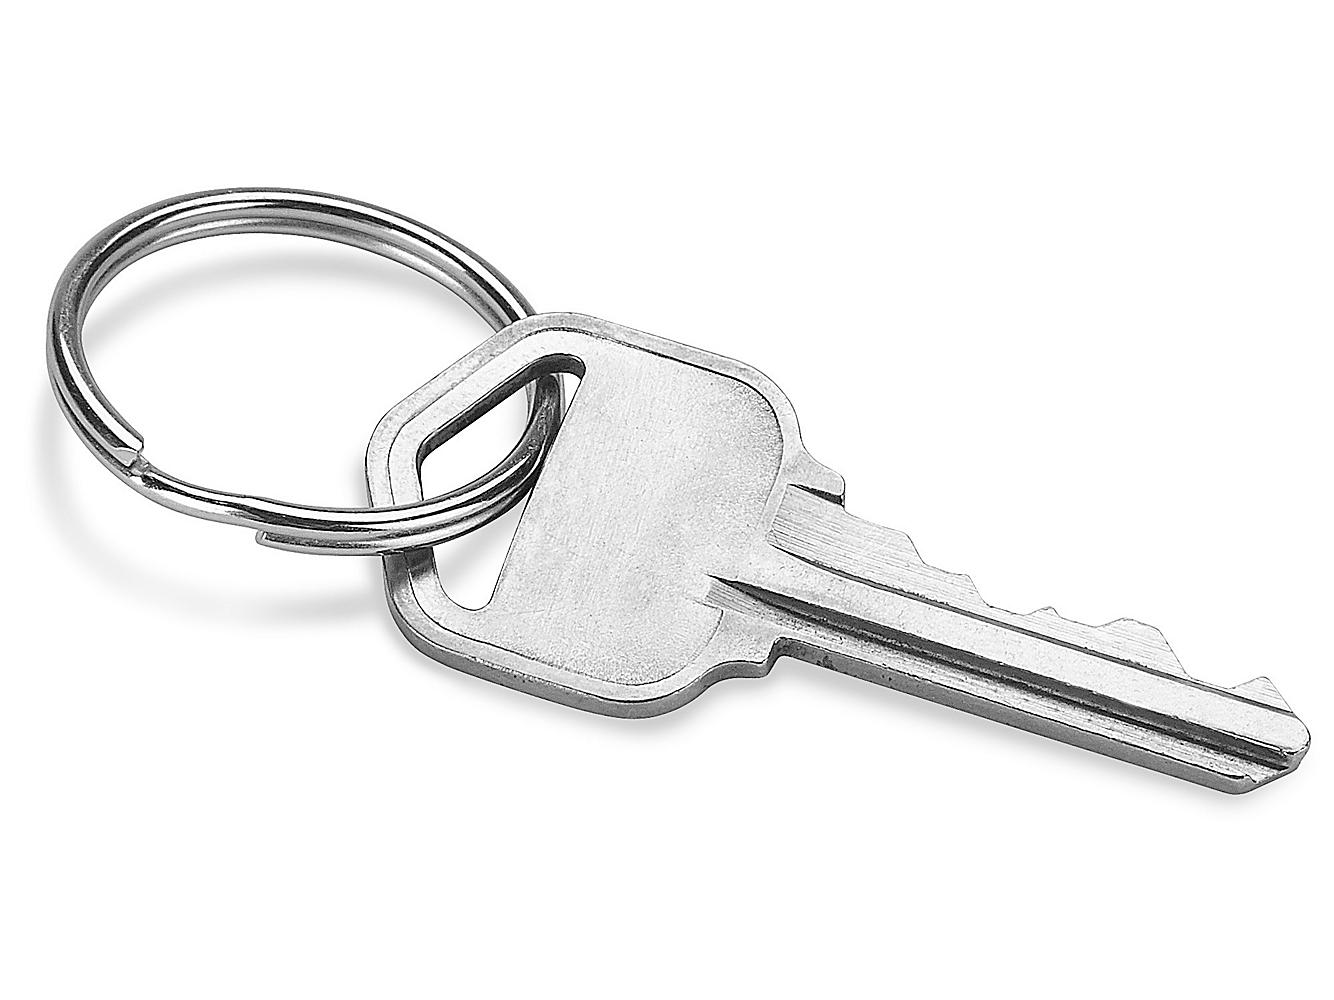 Split Key Rings, Keychain Rings, Metal Key Rings in Stock - ULINE